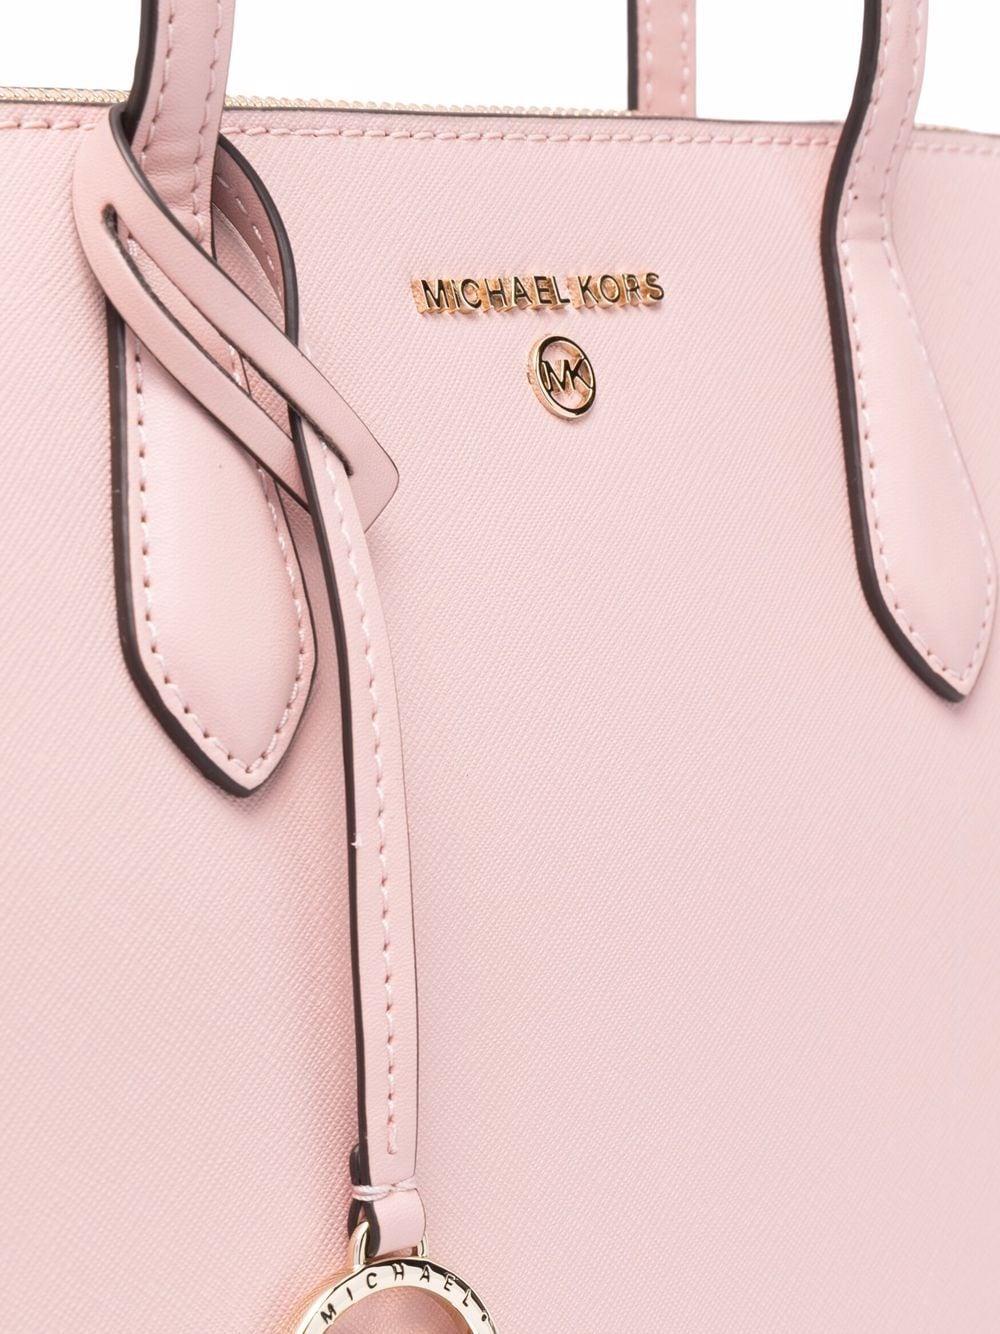 Michael Kors kožená kabelka Marilyn medium royal pink růžová